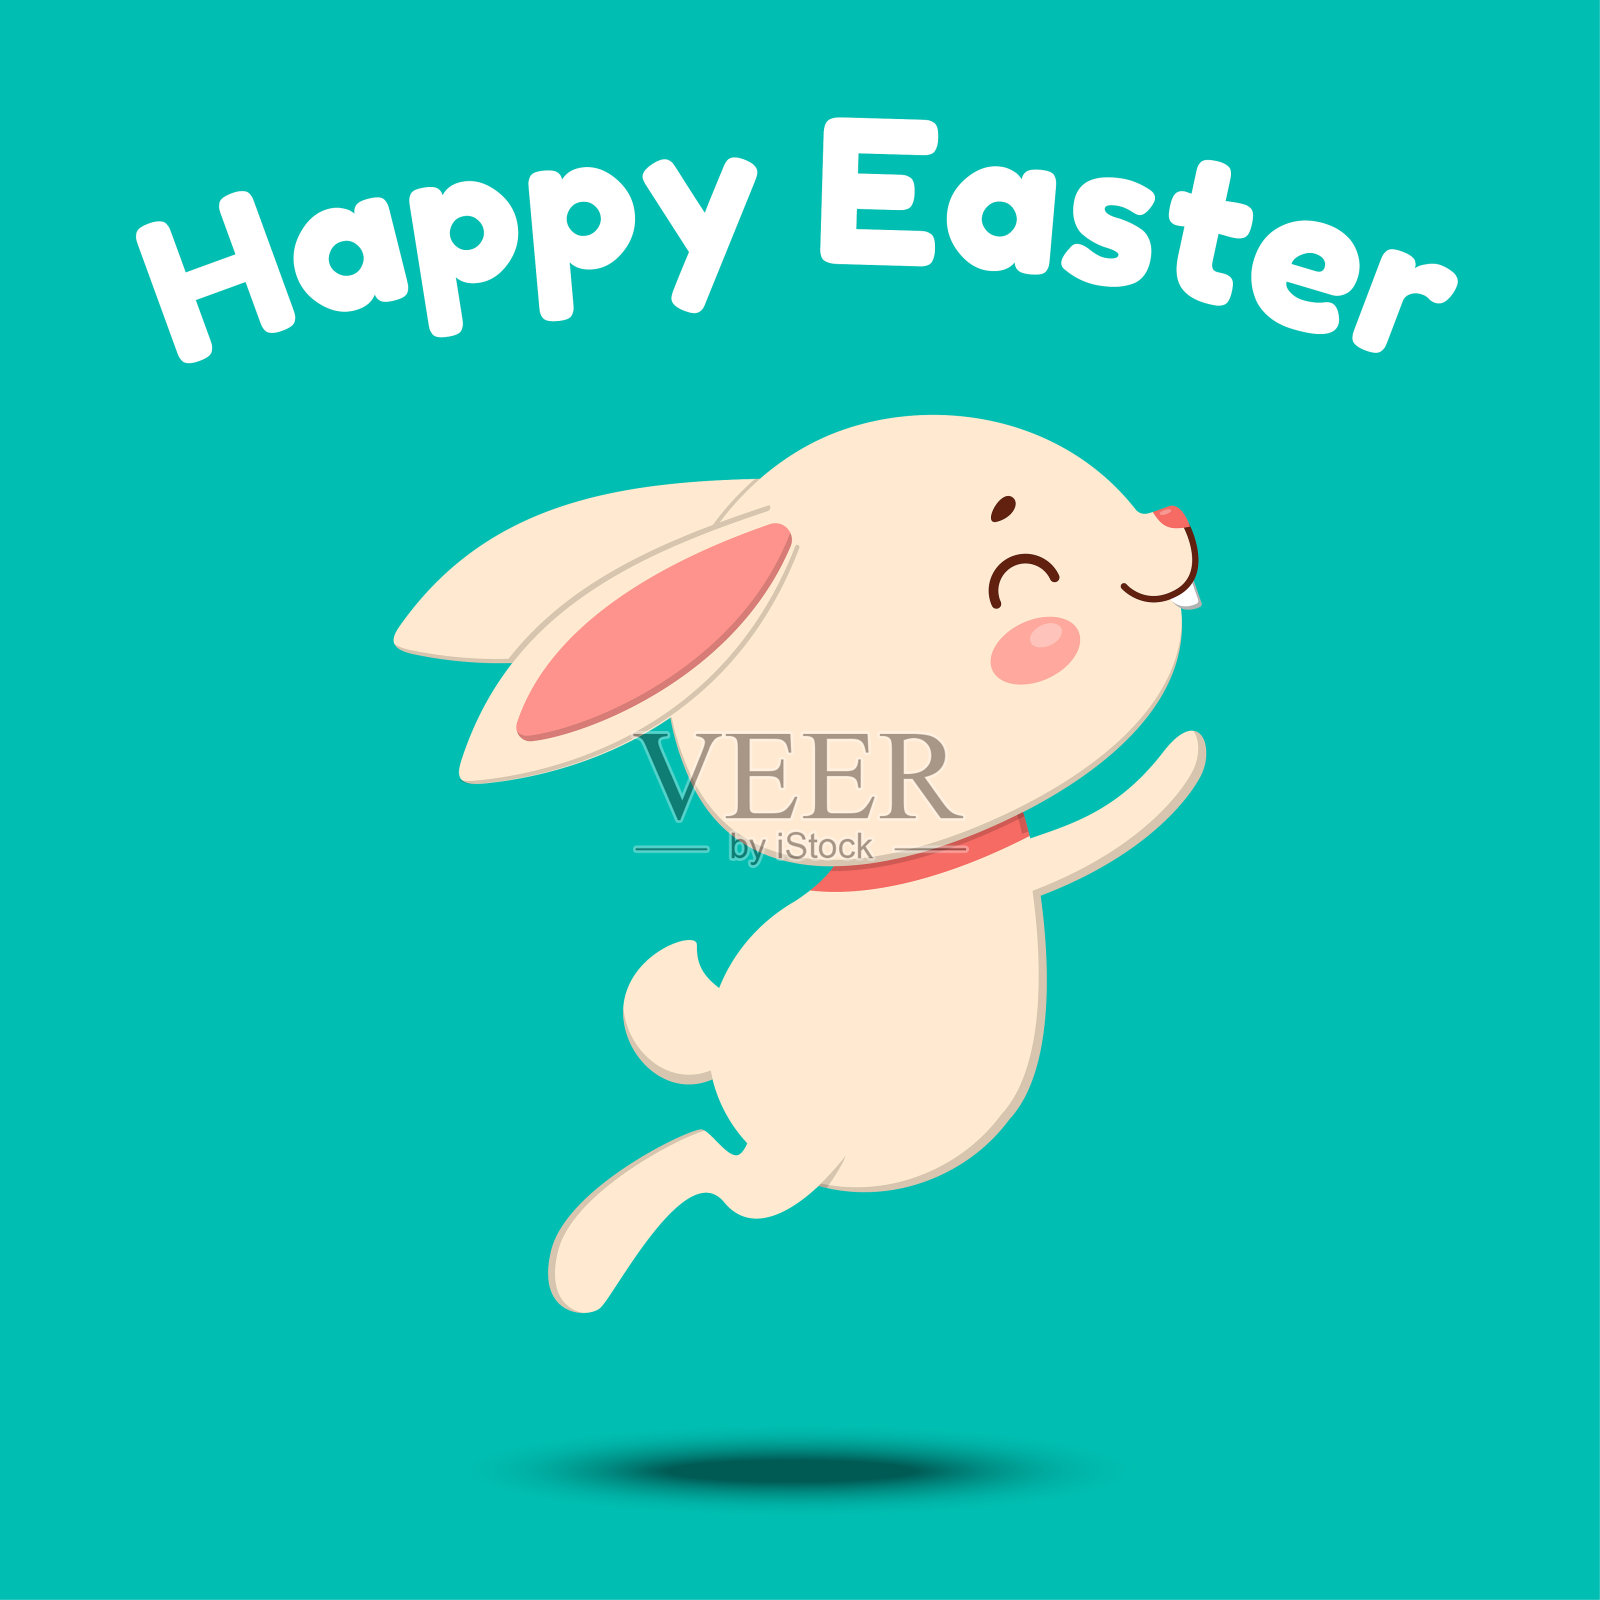 一只可爱的卡通兔子戴着红色的领结，蹦蹦跳跳地笑着。孤立在绿松石背景上插画图片素材